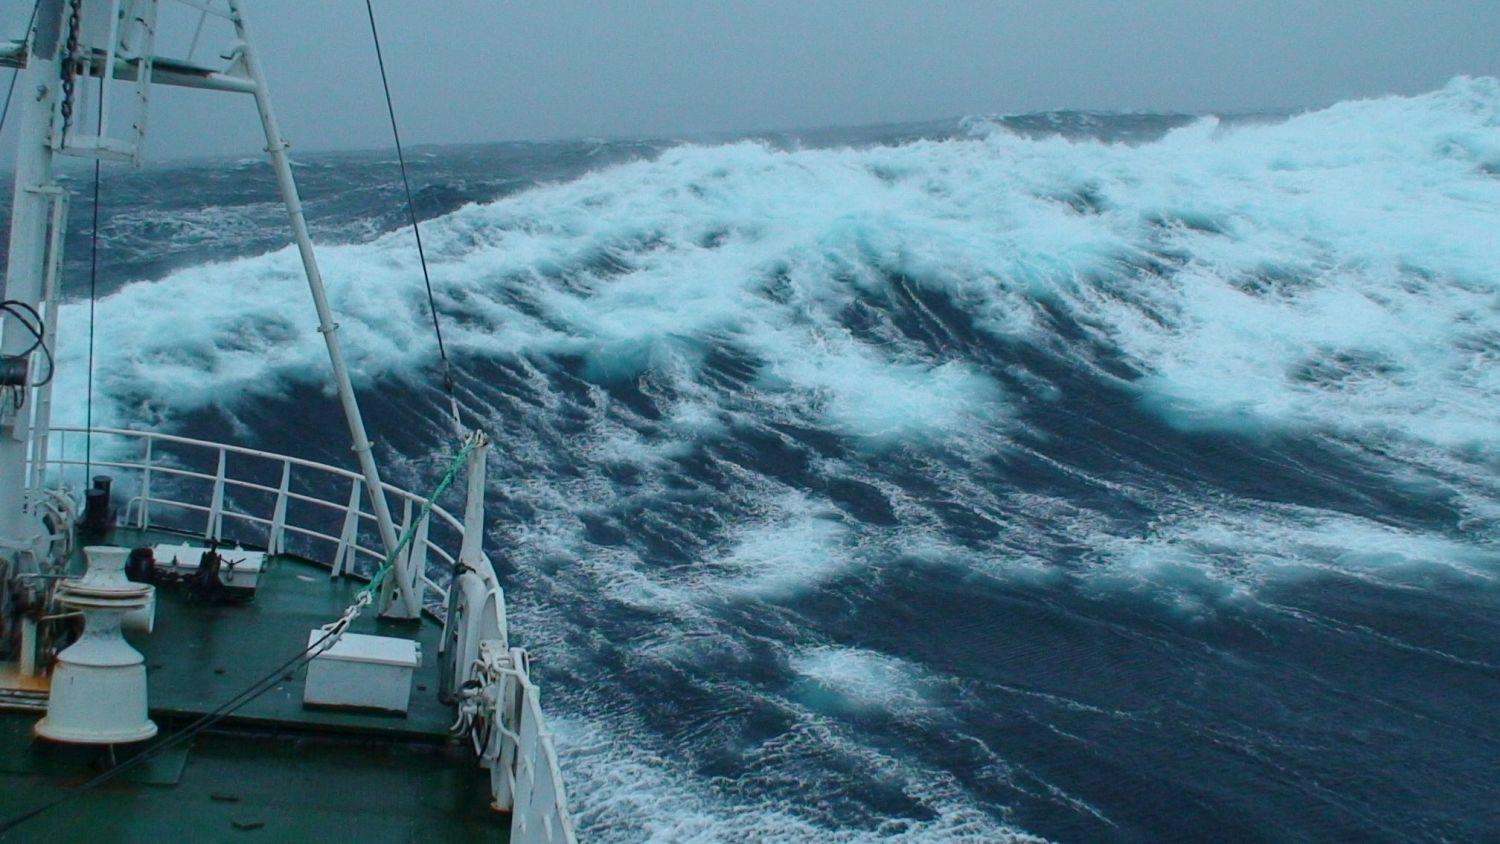 Stora gråa vågor och fören på en båt syns på bilden.